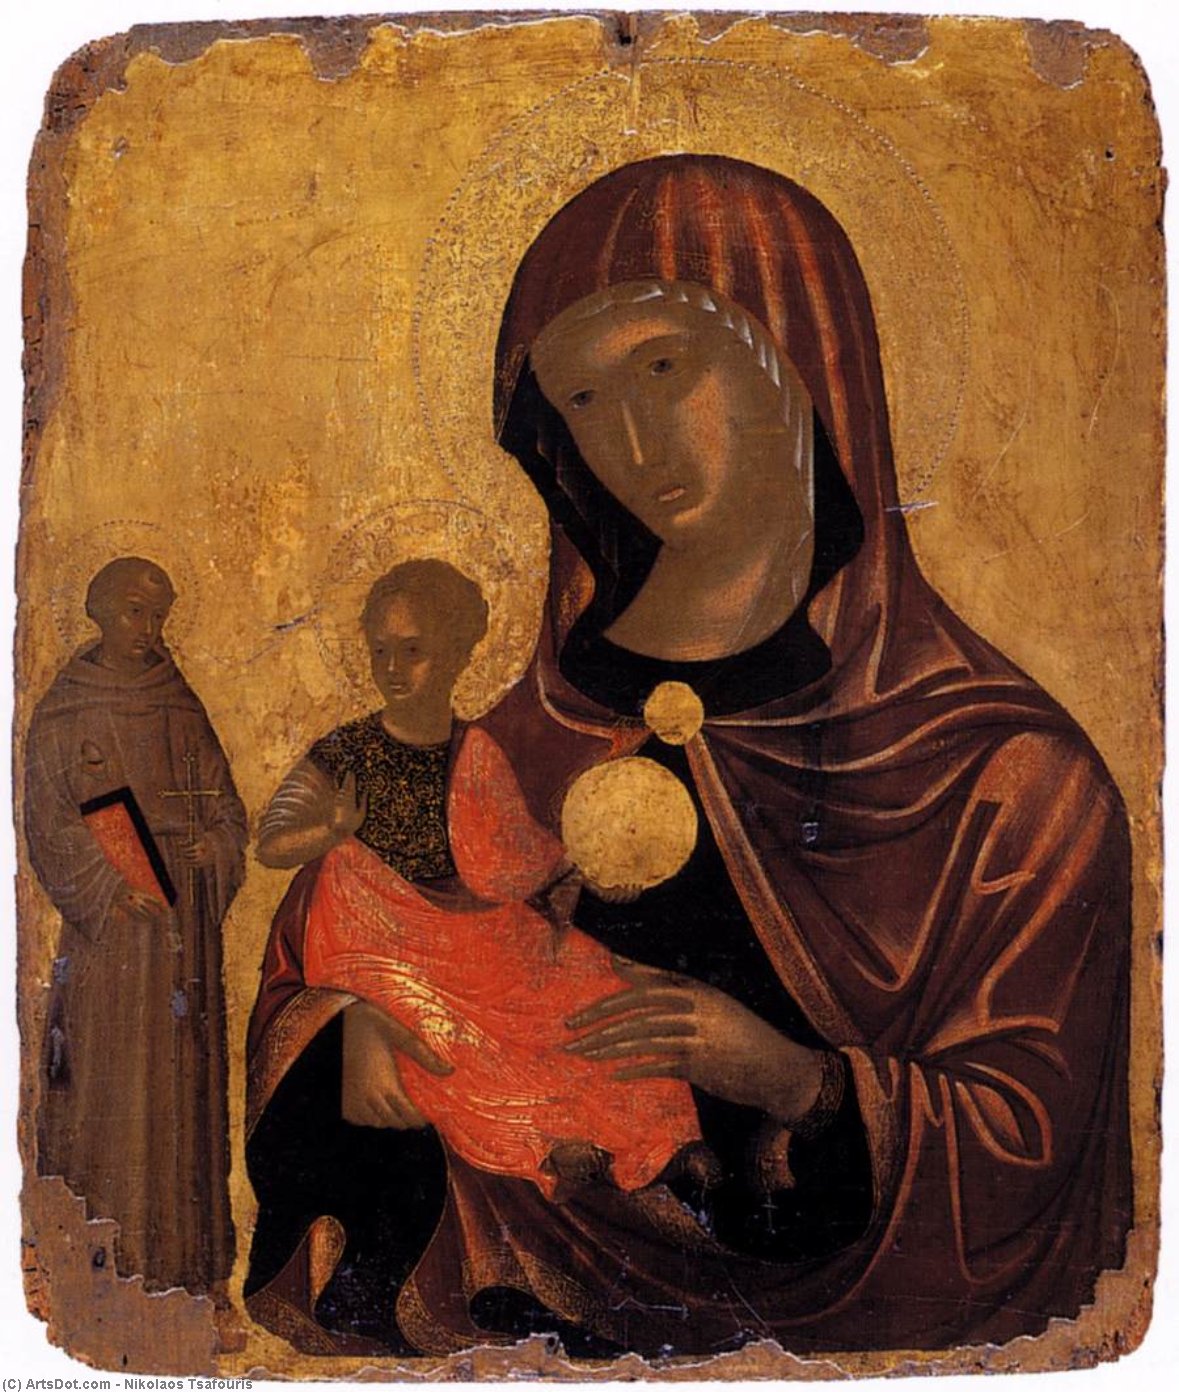 La Vergine e San Francesco d`Assisi, 1490 di Nikolaos Tsafouris Nikolaos Tsafouris | ArtsDot.com